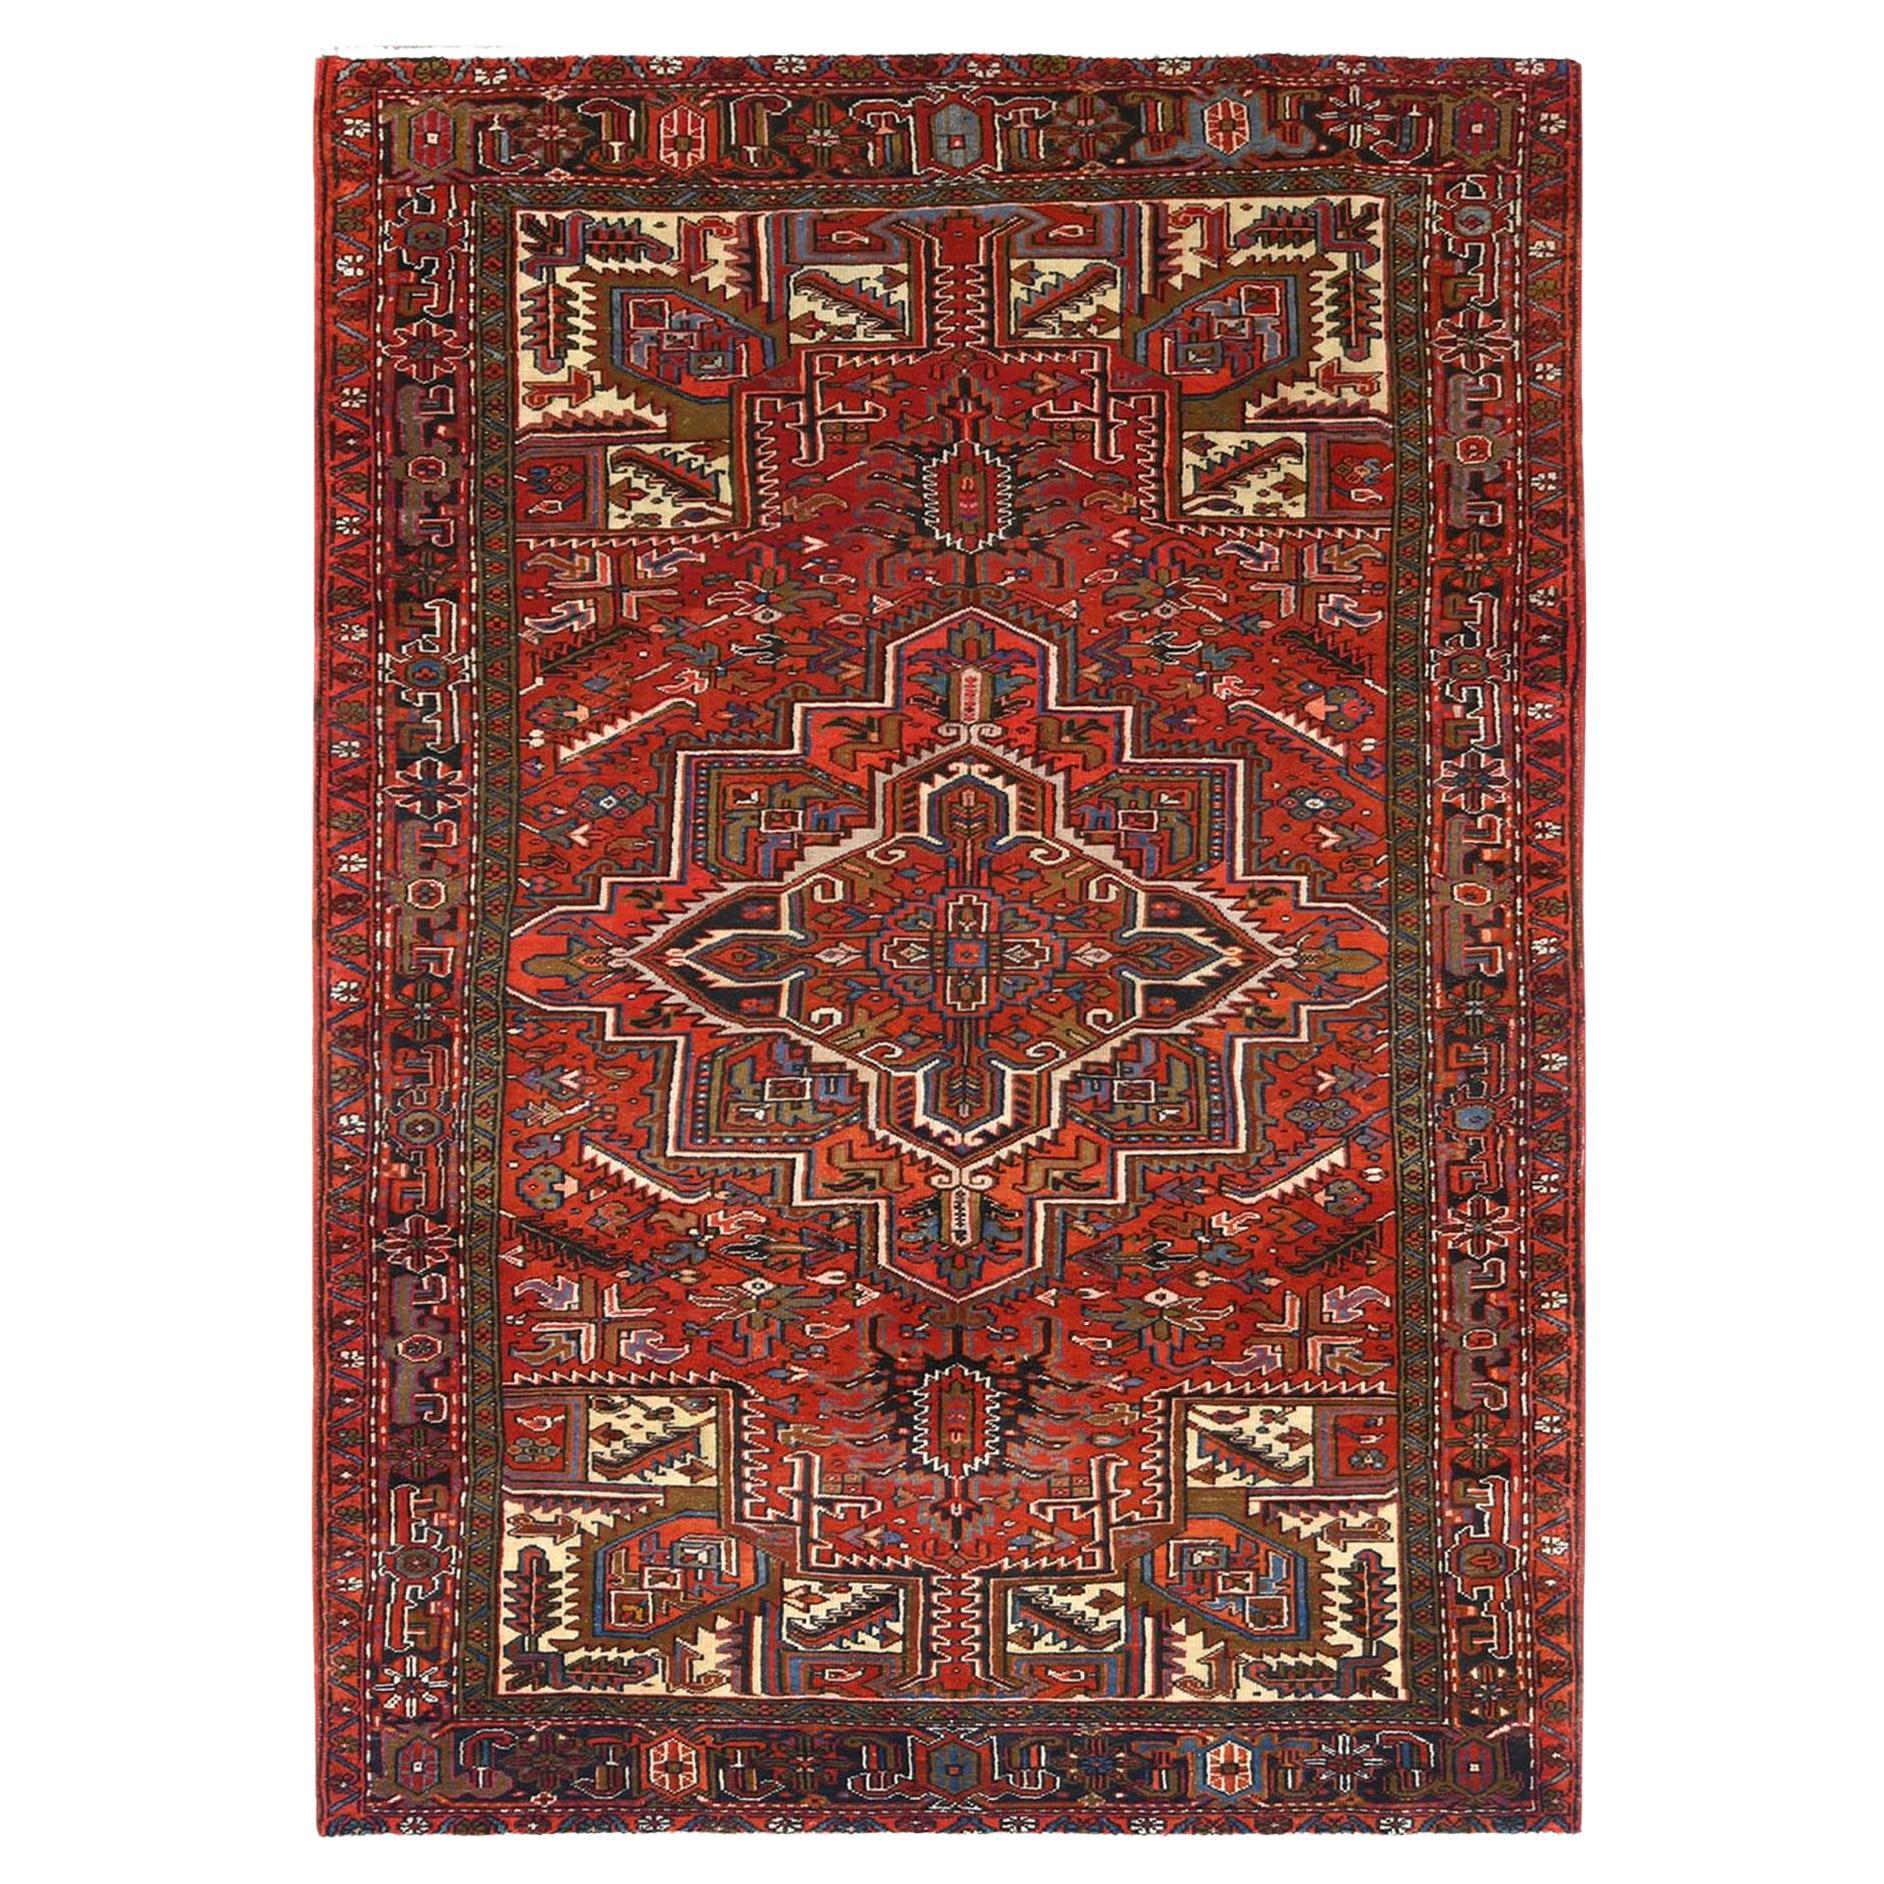 Rostrot Vintage Persisch Heriz Gereinigt Rustikal Look Getragene Wolle Handgeknüpft Teppich